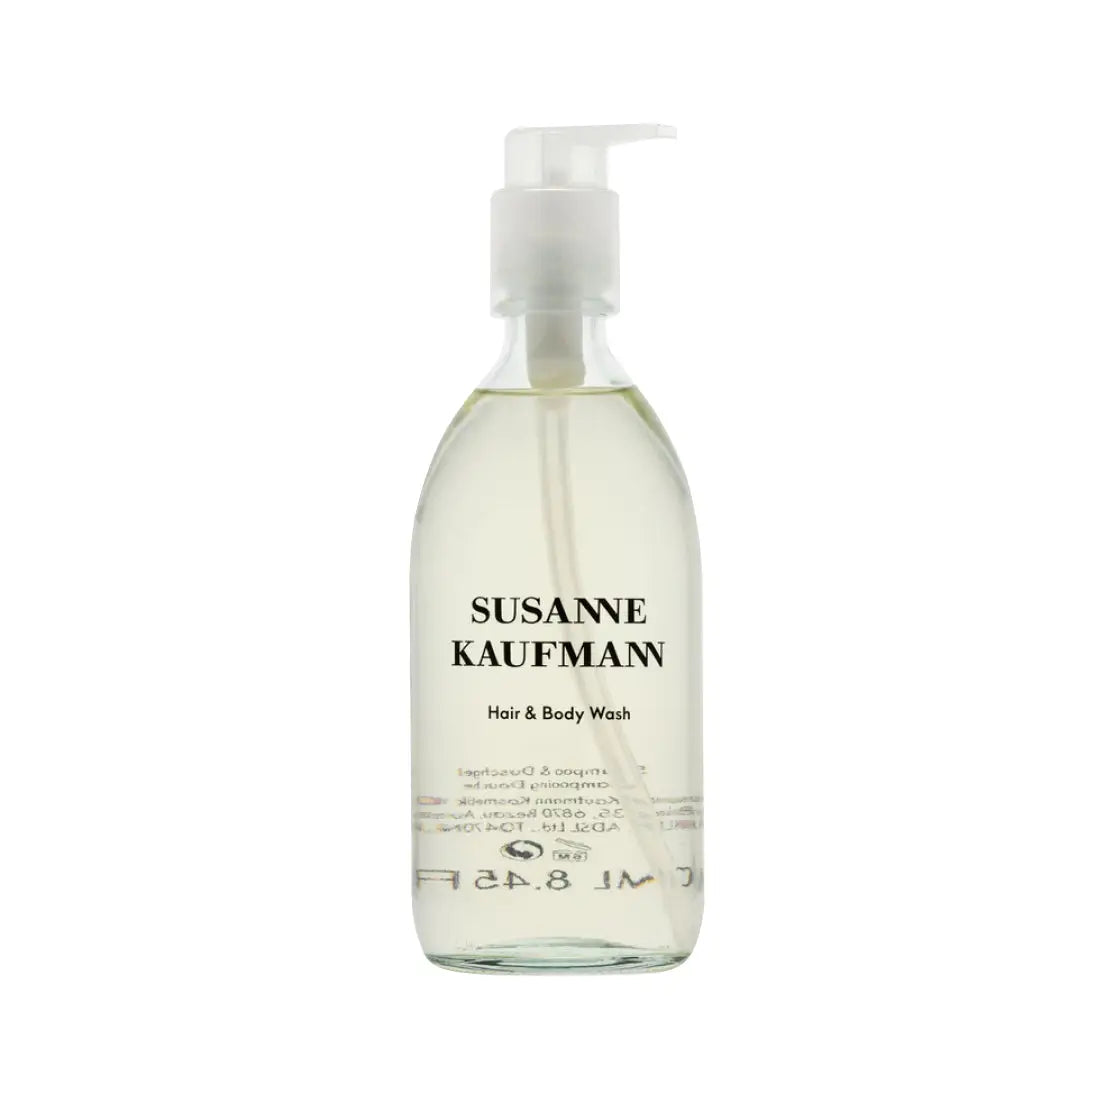 Susanne Kaufmann Hair & Body Wash 250ml